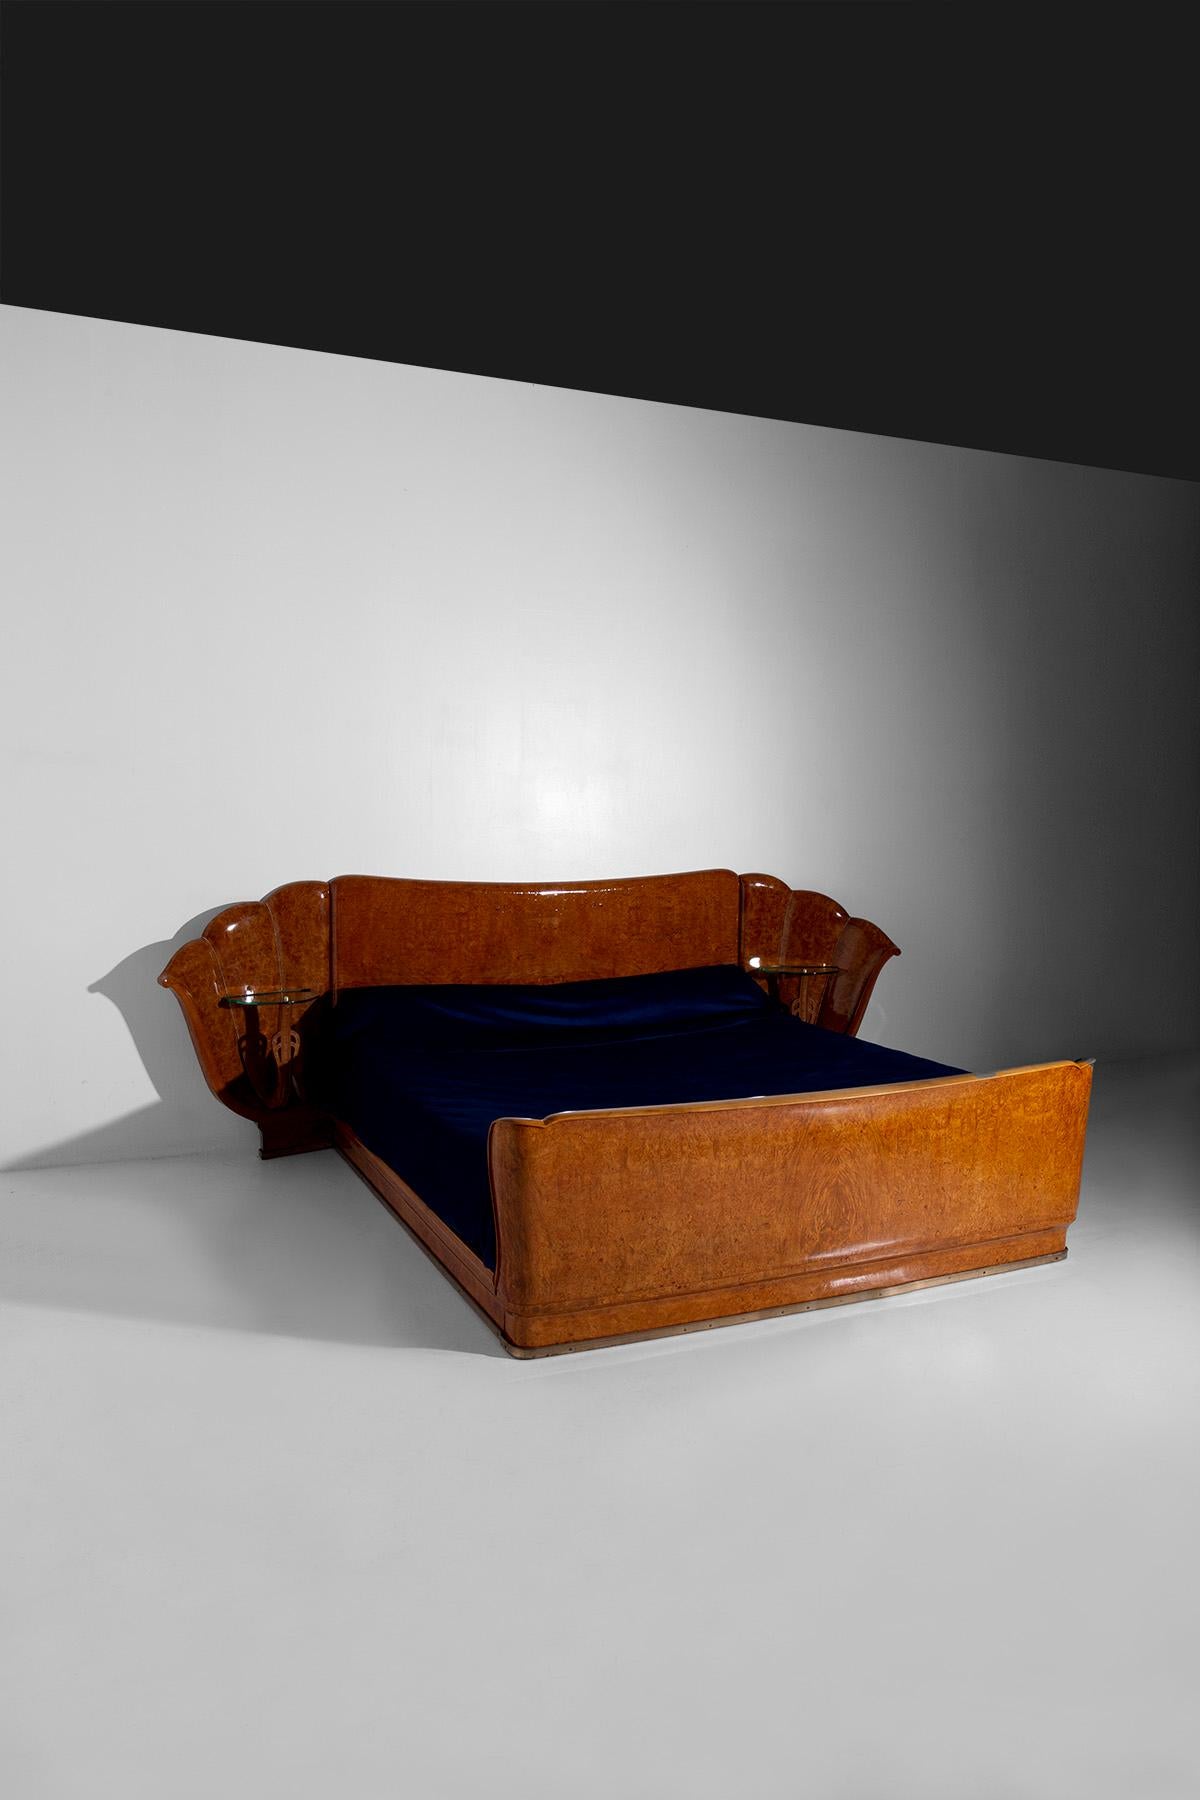 Entrez dans le monde de l'artisanat et de l'art italien des années 1950 avec ce magnifique lit, une création de Valzania qui incarne l'allure intemporelle du style Art déco. Entièrement fabriqué en bruyère de bouleau, ce lit est un véritable